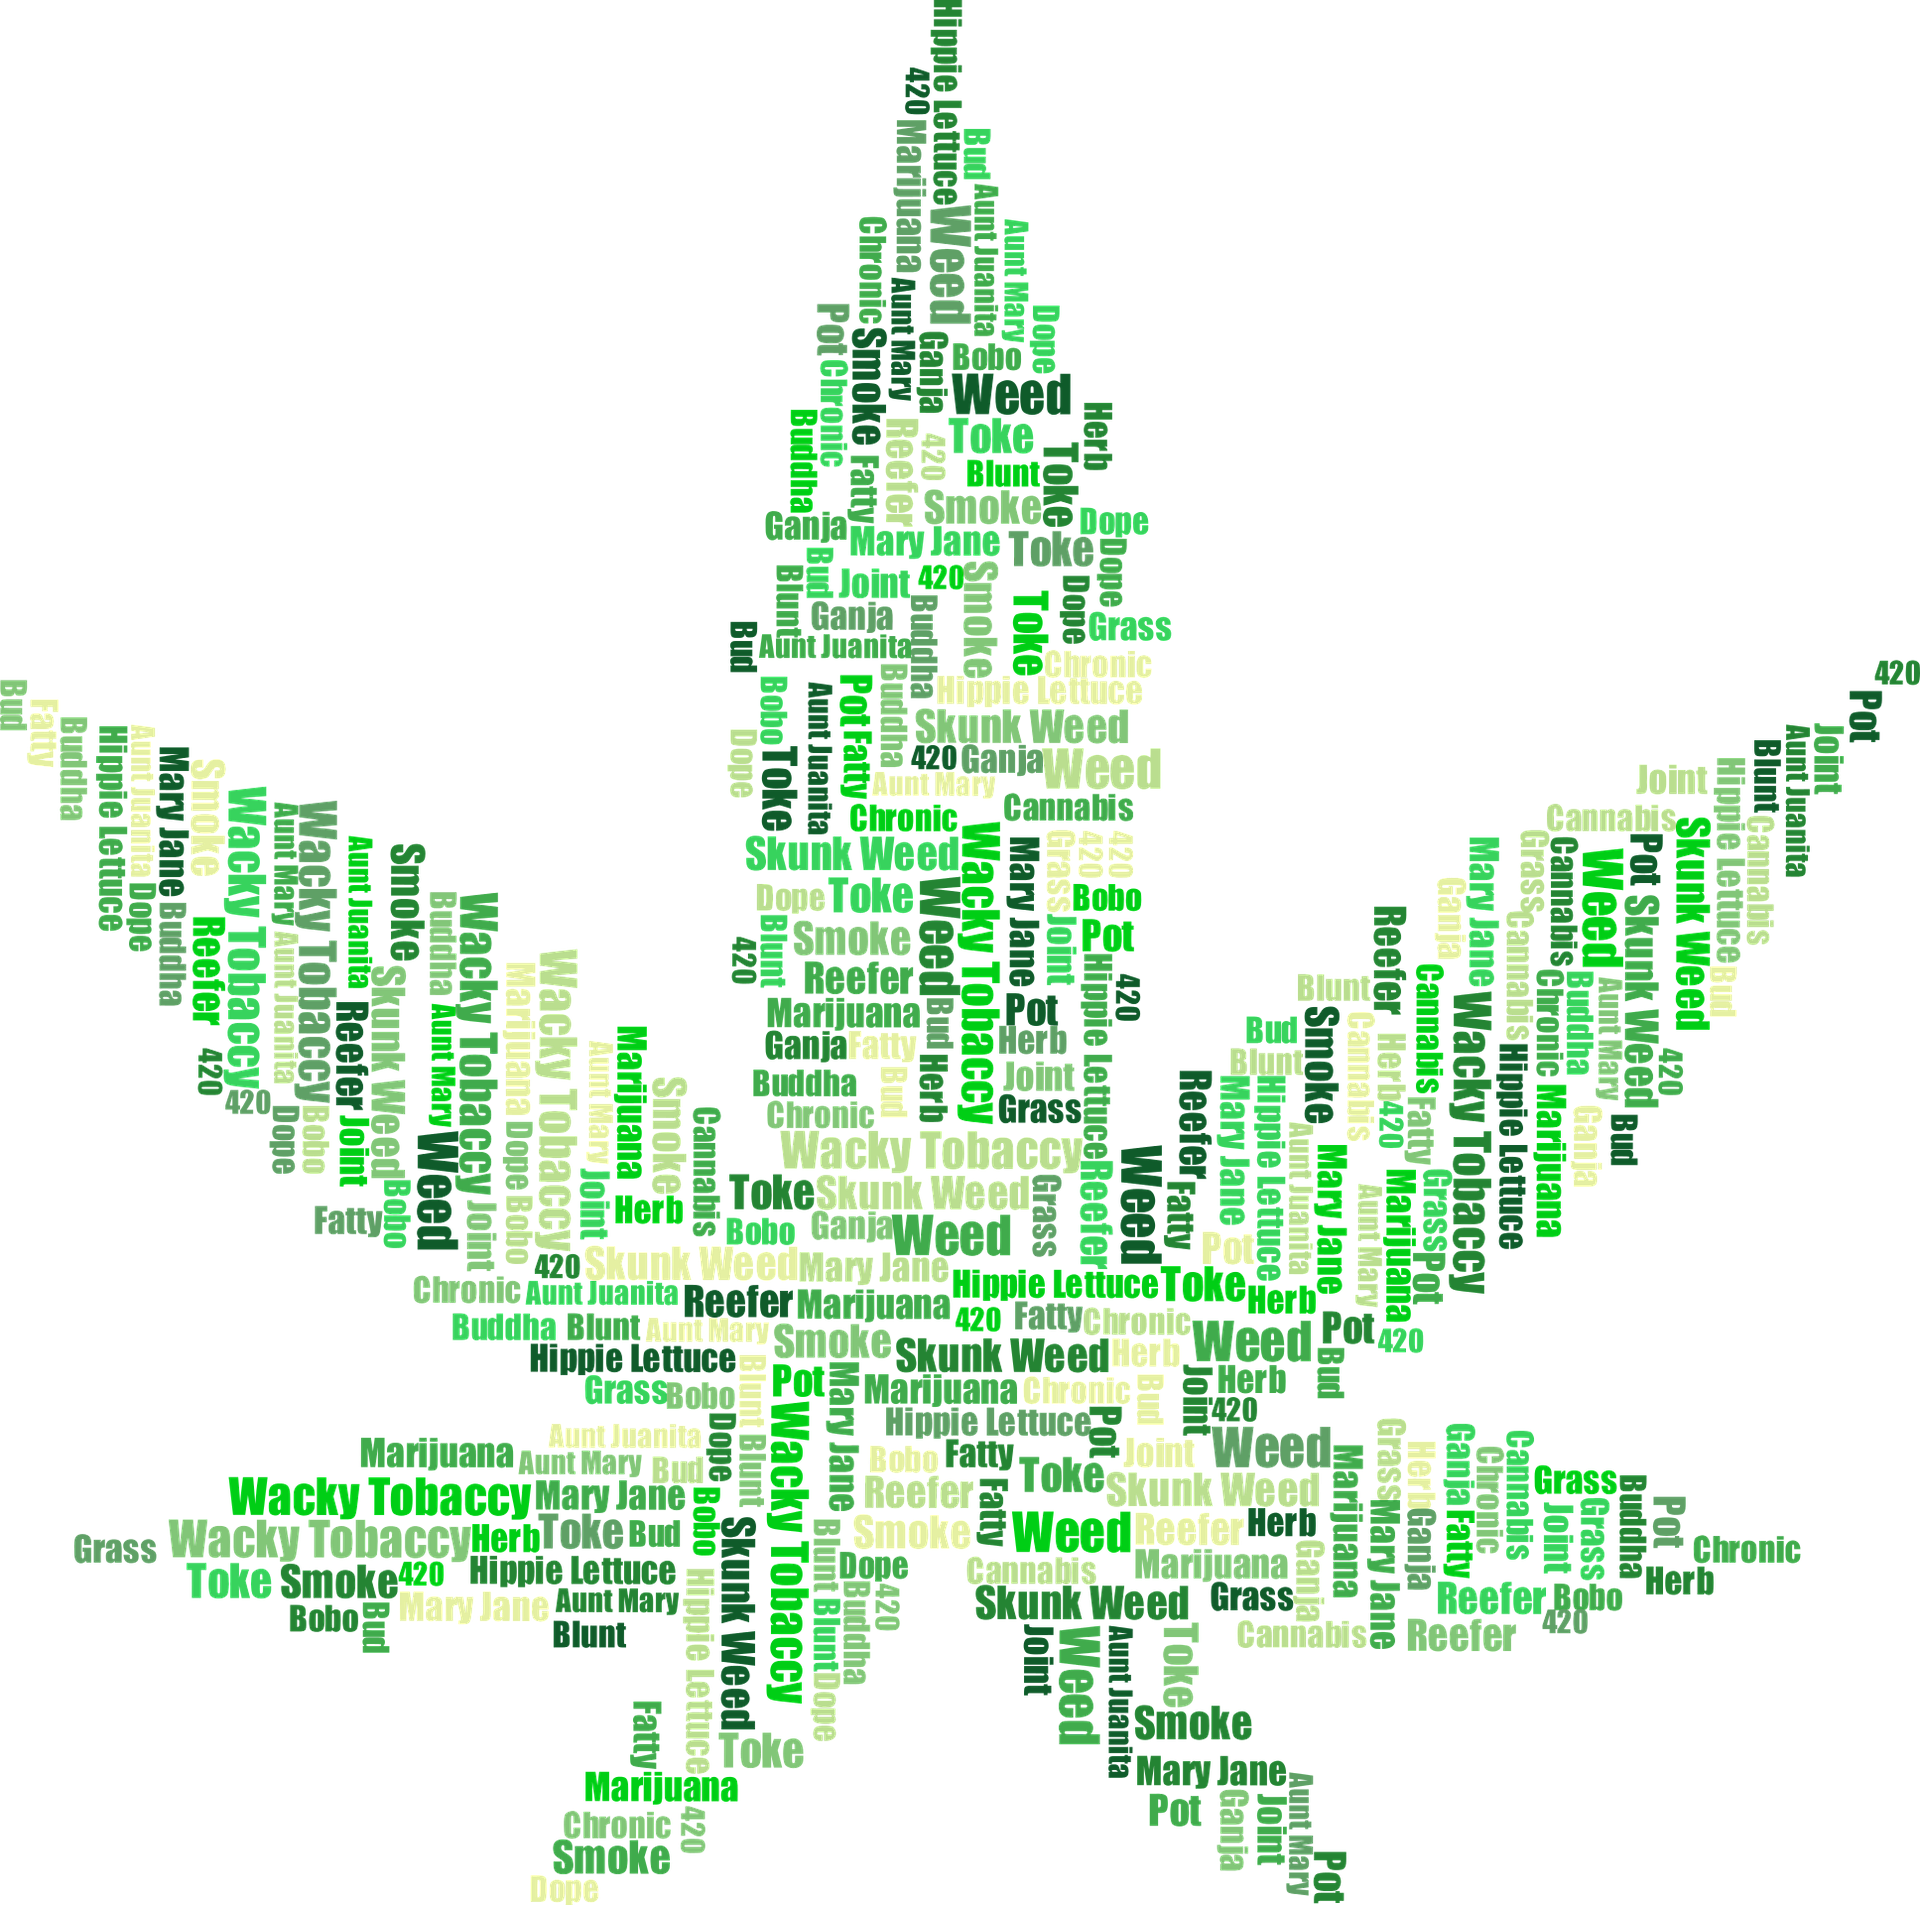 Cannabis ‘popolare’: sale ancora il prezzo delle azioni